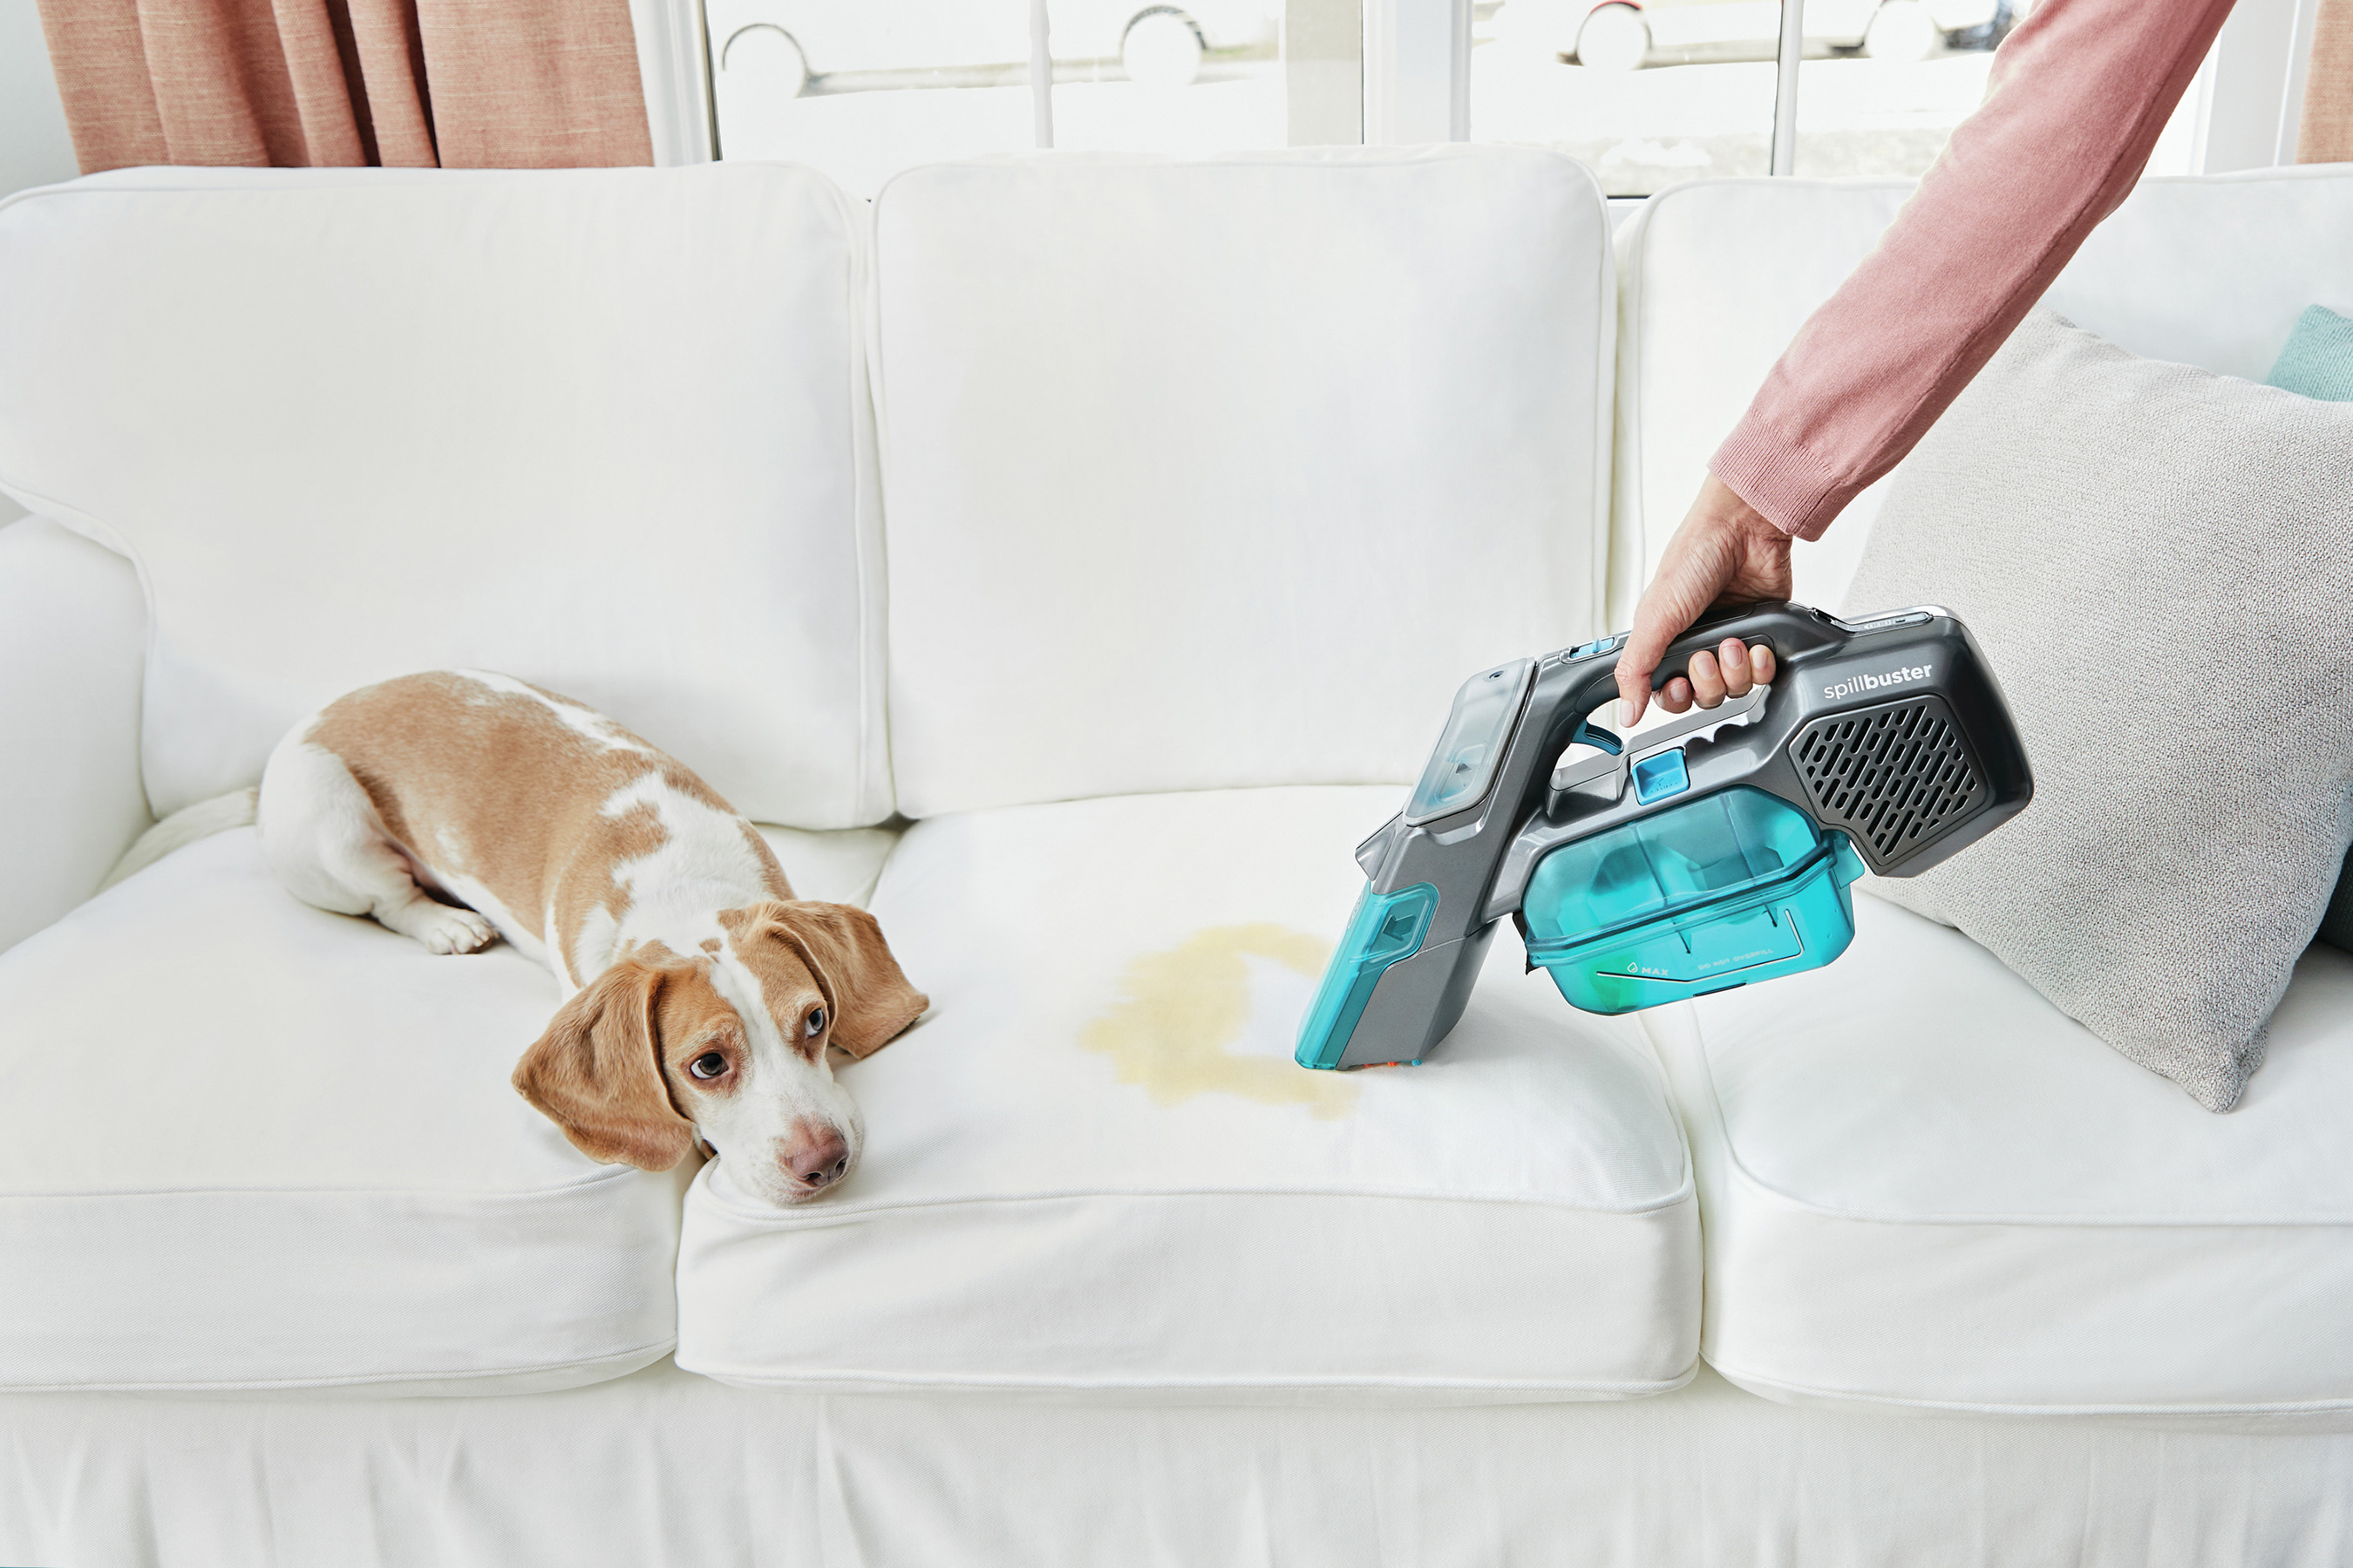 BLACK+DECKER spillbuster Cordless Spill + Spot Carpet Cleaner in